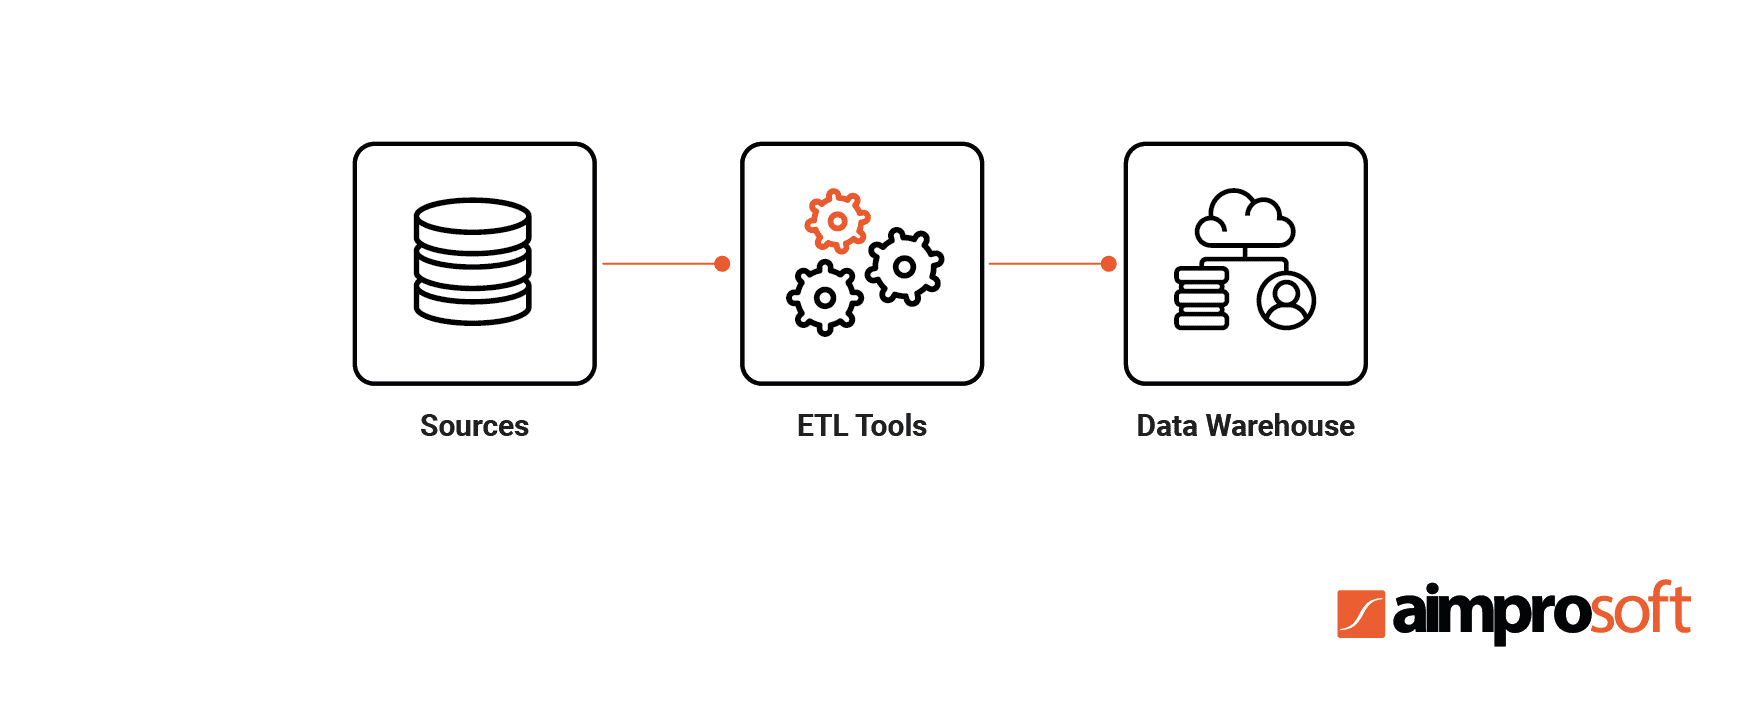 Role of ETL tools in ETL process